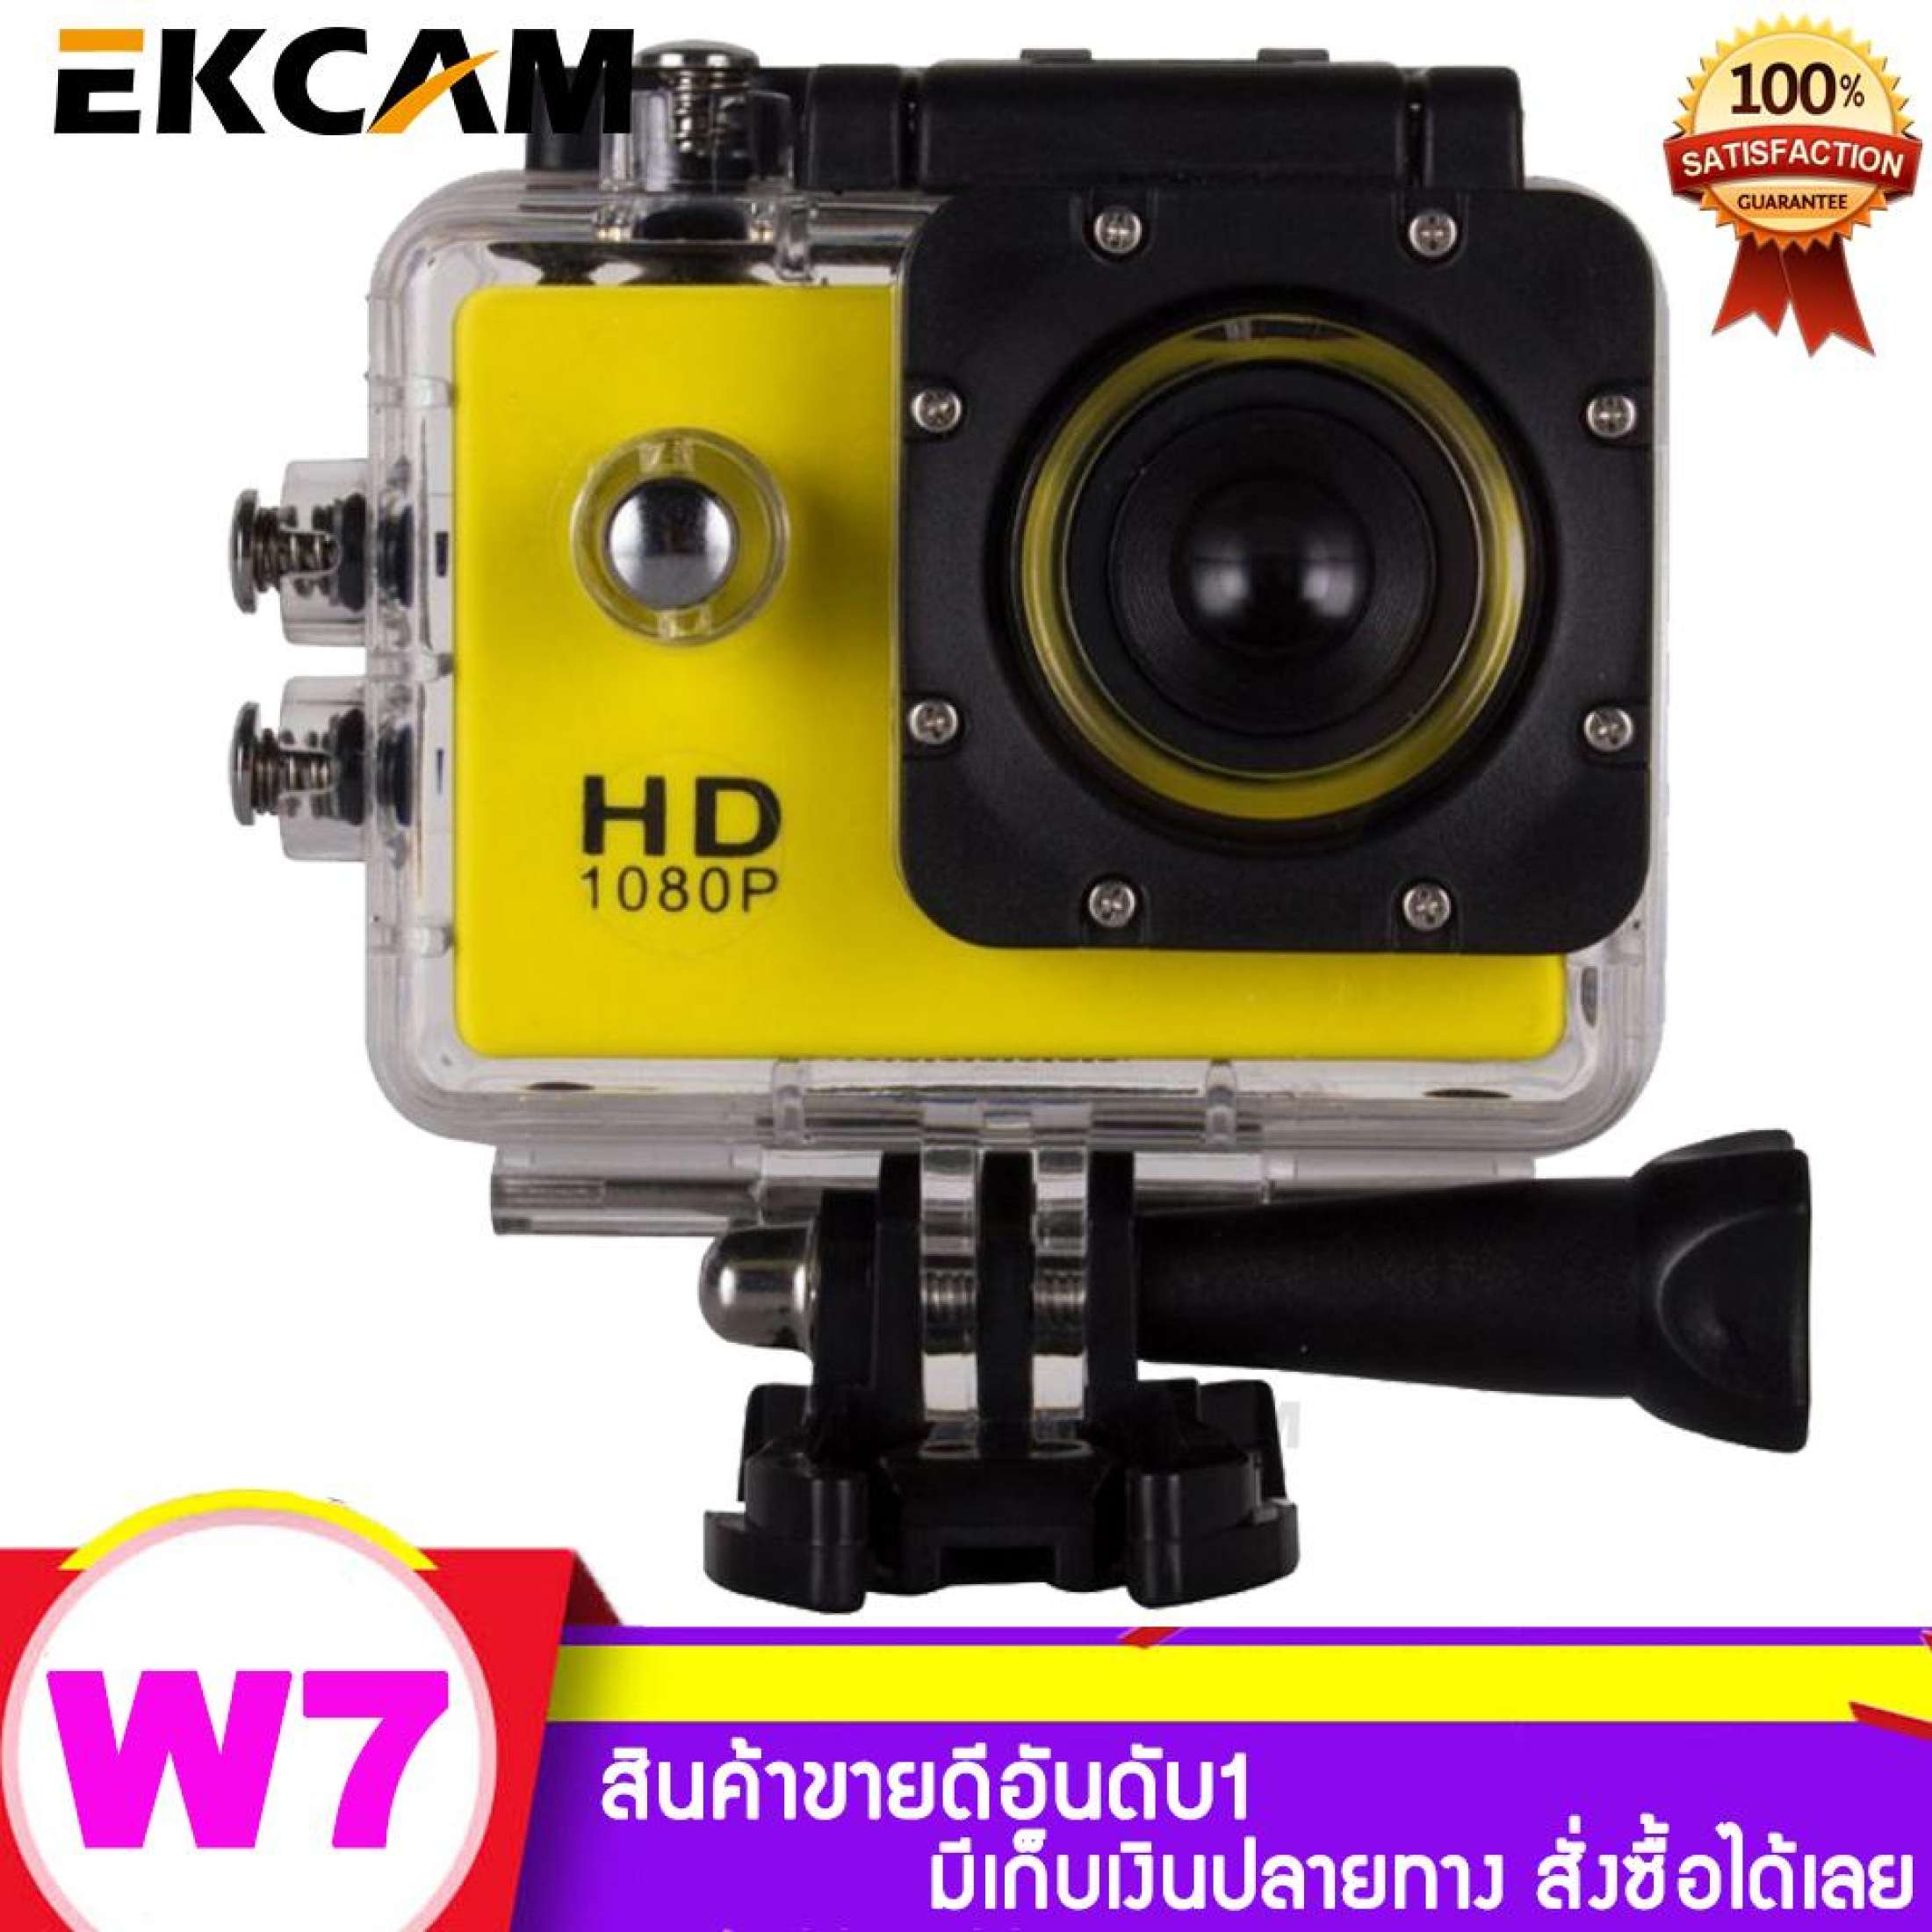 กล้องกันน้ำ Sport Camera Full HD 1080p จอ 2.0นิ้ว W7 ราคาถูกกว่า!!!